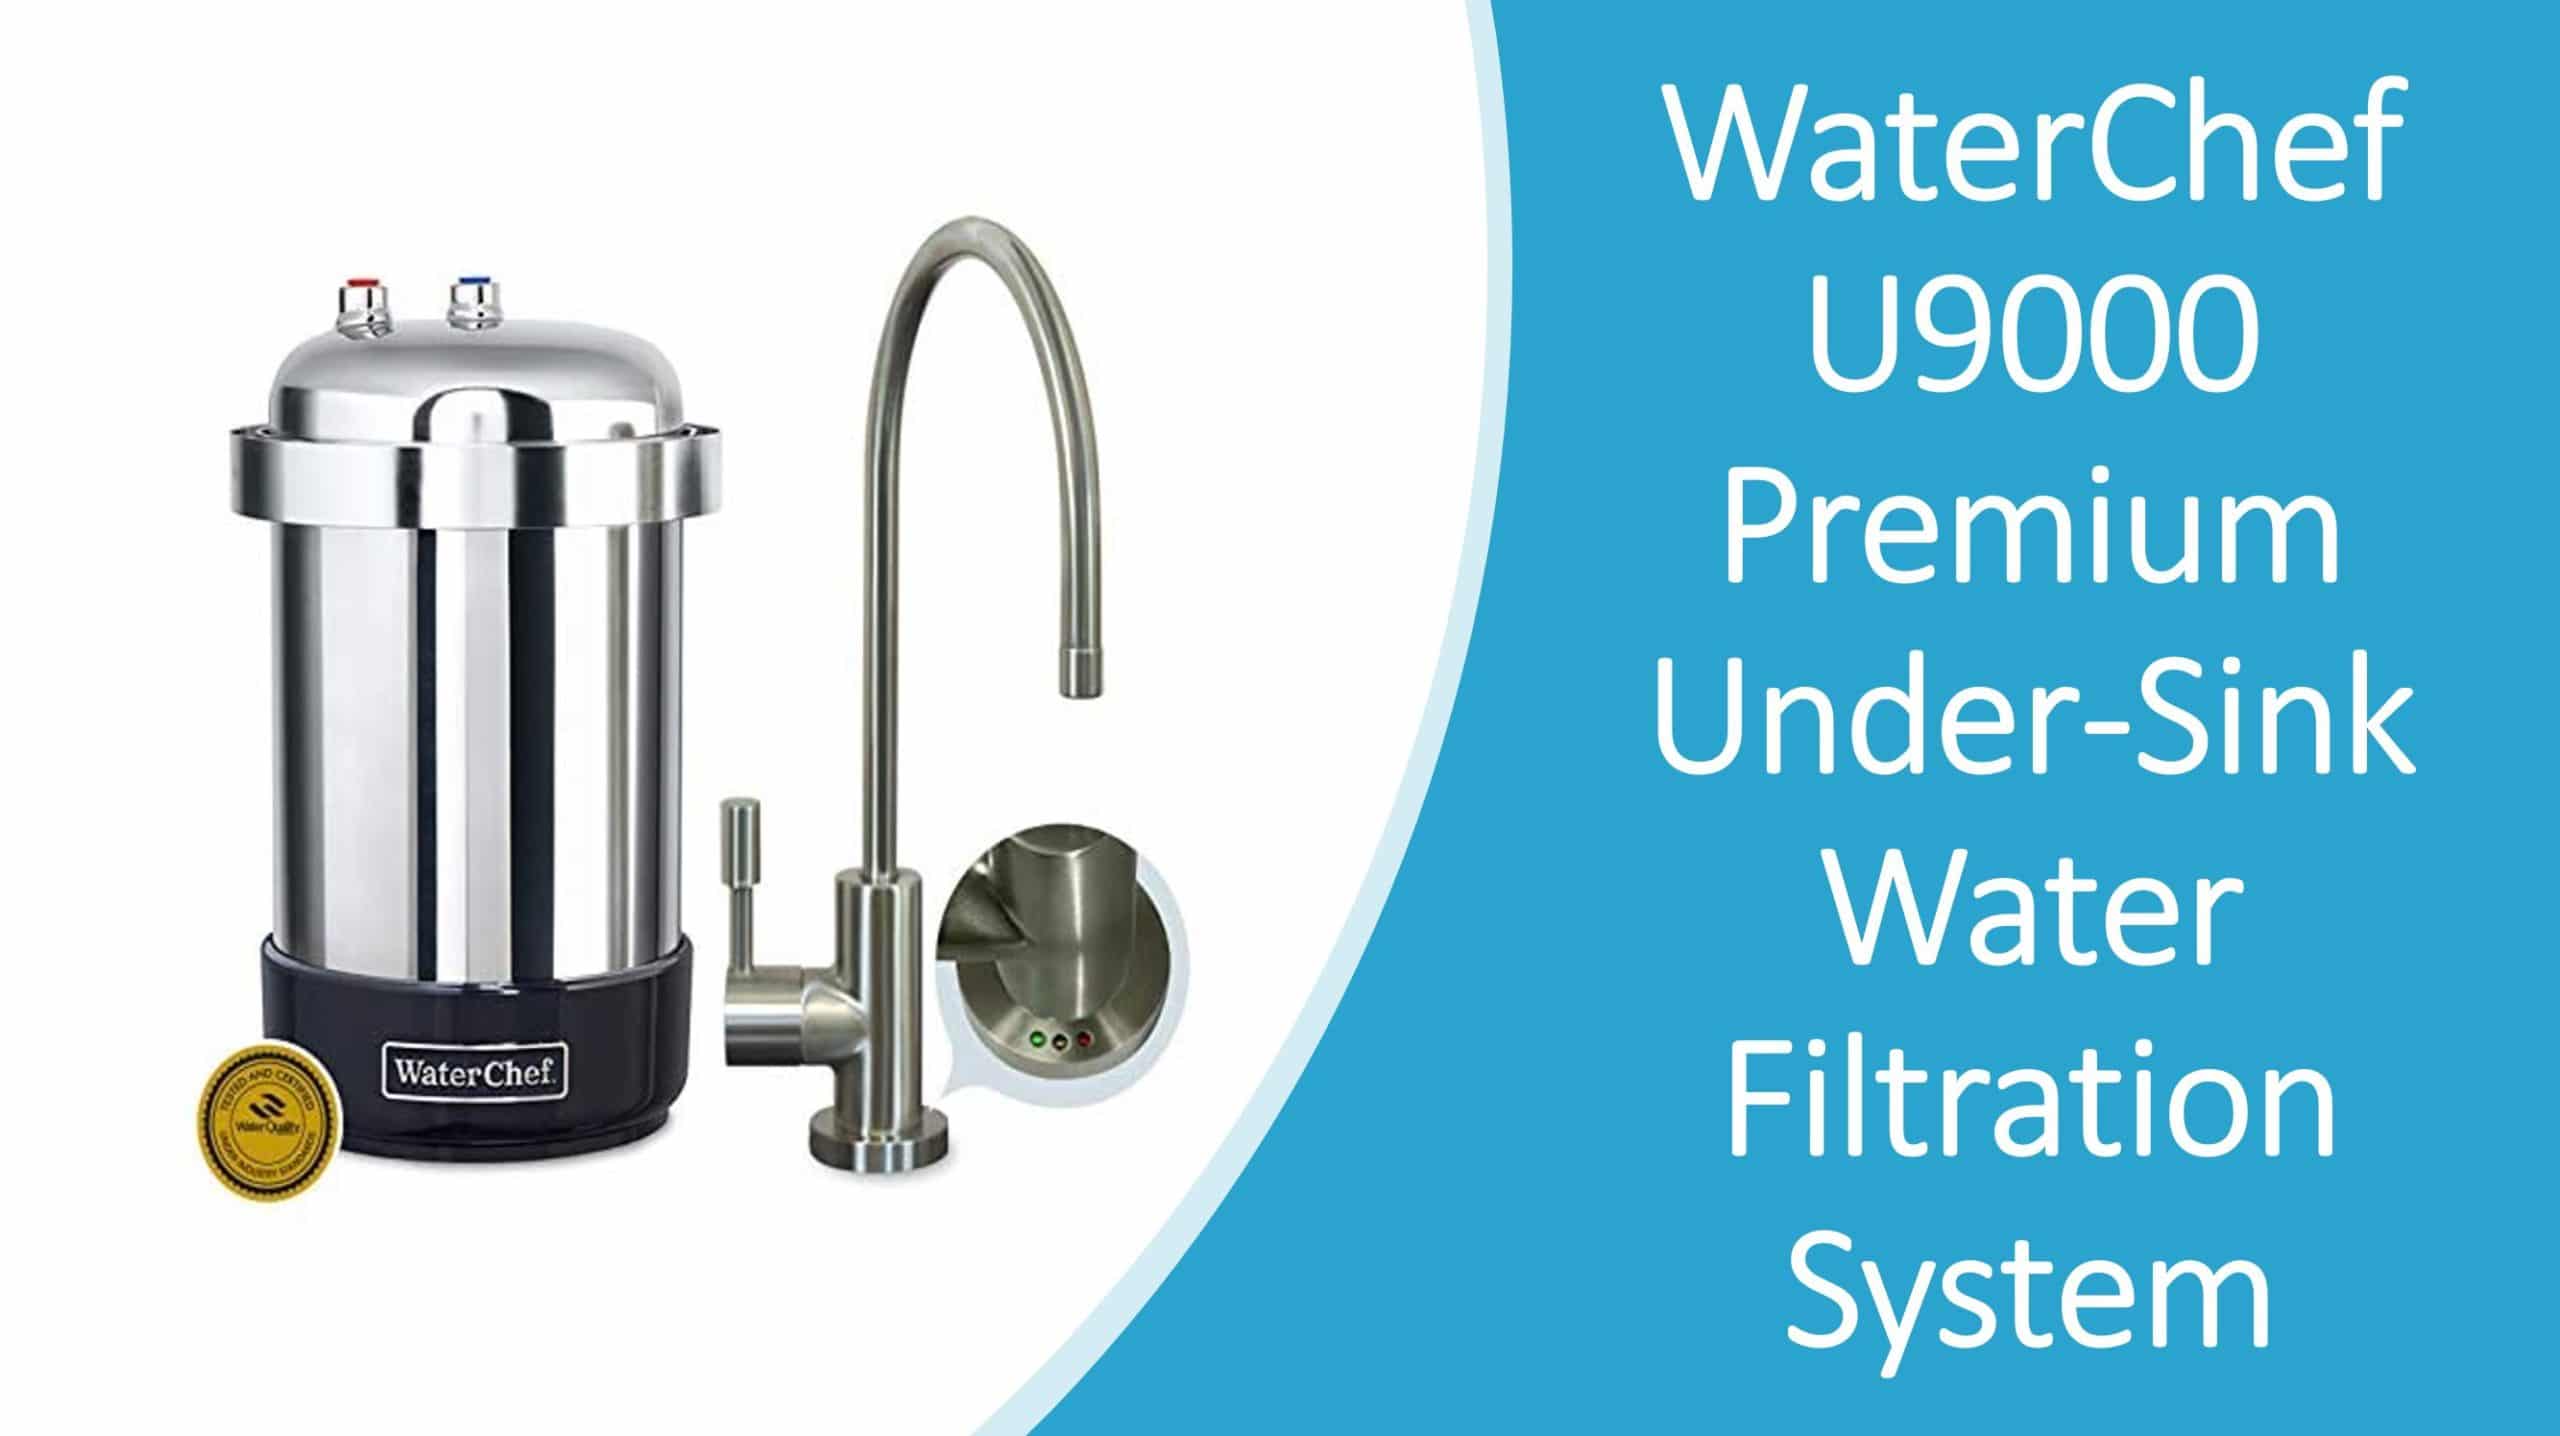 WaterChef U9000 Premium Under-Sink Water Filtration System Brushed Nickel 